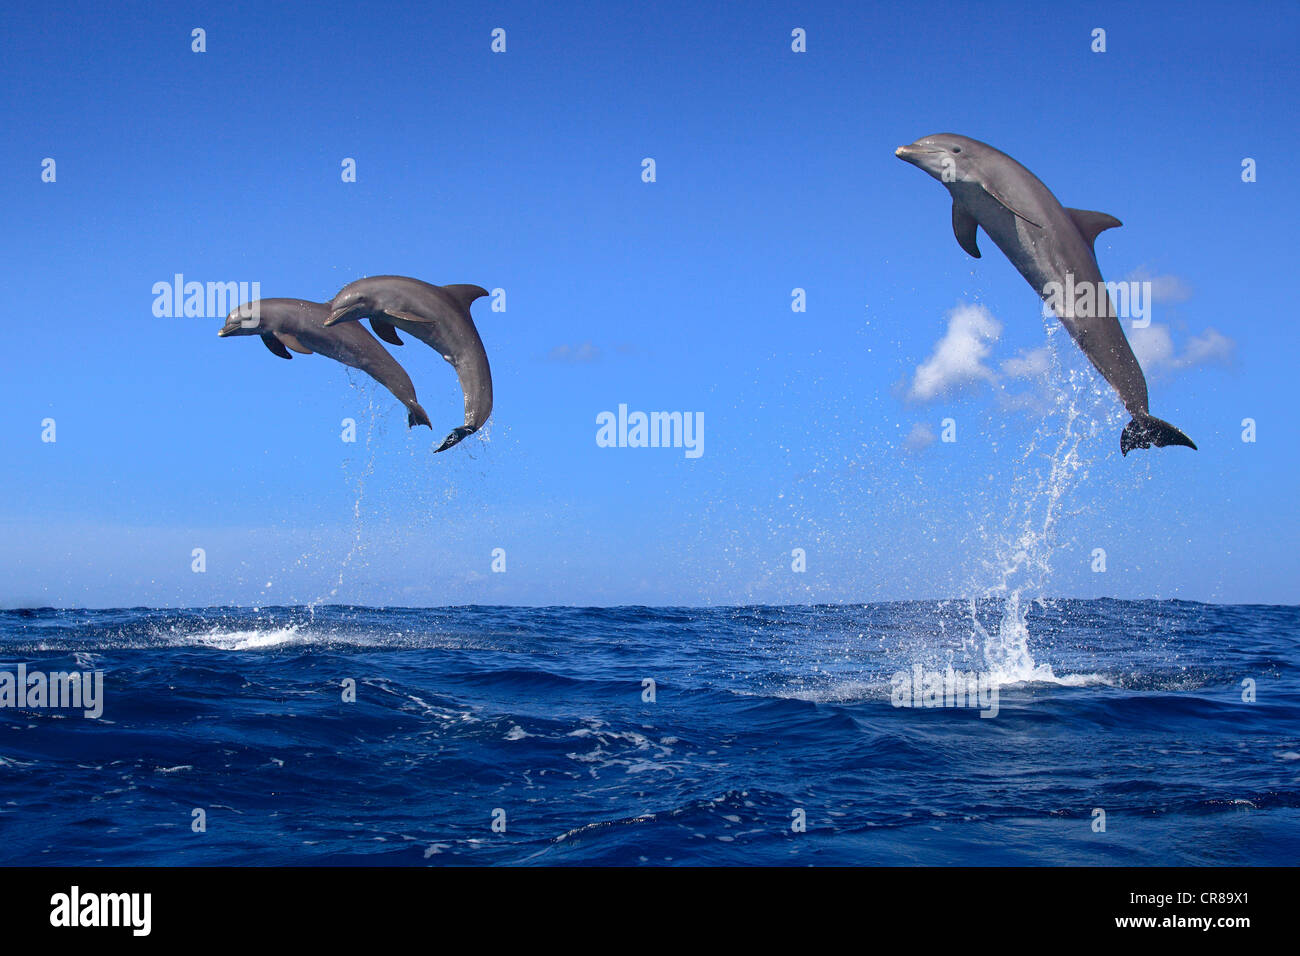 Tres delfines nariz de botella (Tursiops truncatus), adulto, saltando fuera del mar, Roatán, Honduras, El Caribe, América Central Foto de stock